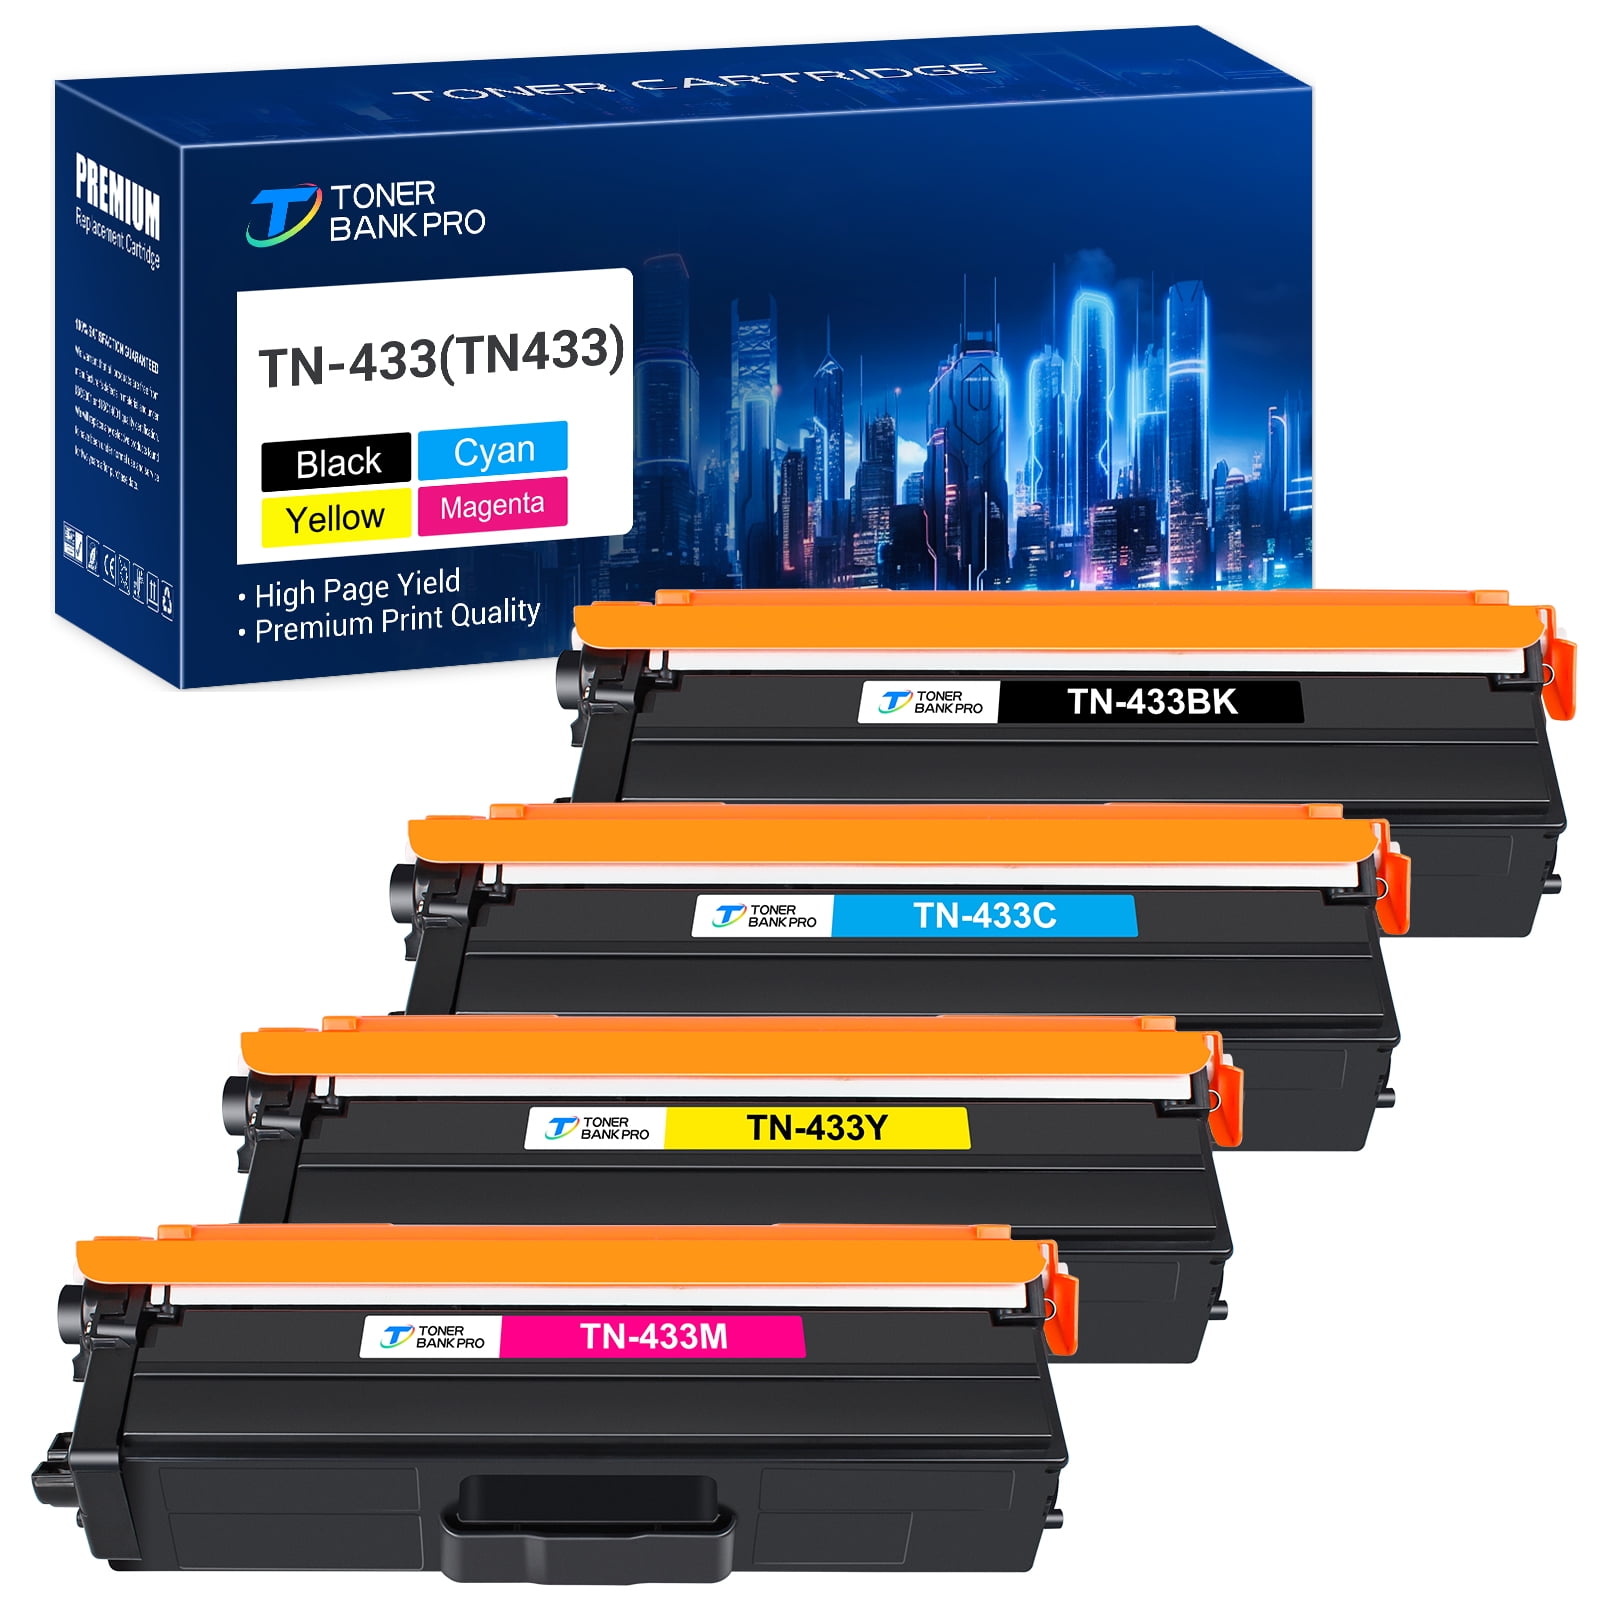 Imprimante multifonction laser couleur - BROTHER - MFC-L3710CW - Wi-Fi -  Ecran tactile 9,3 cm - Cdiscount Informatique